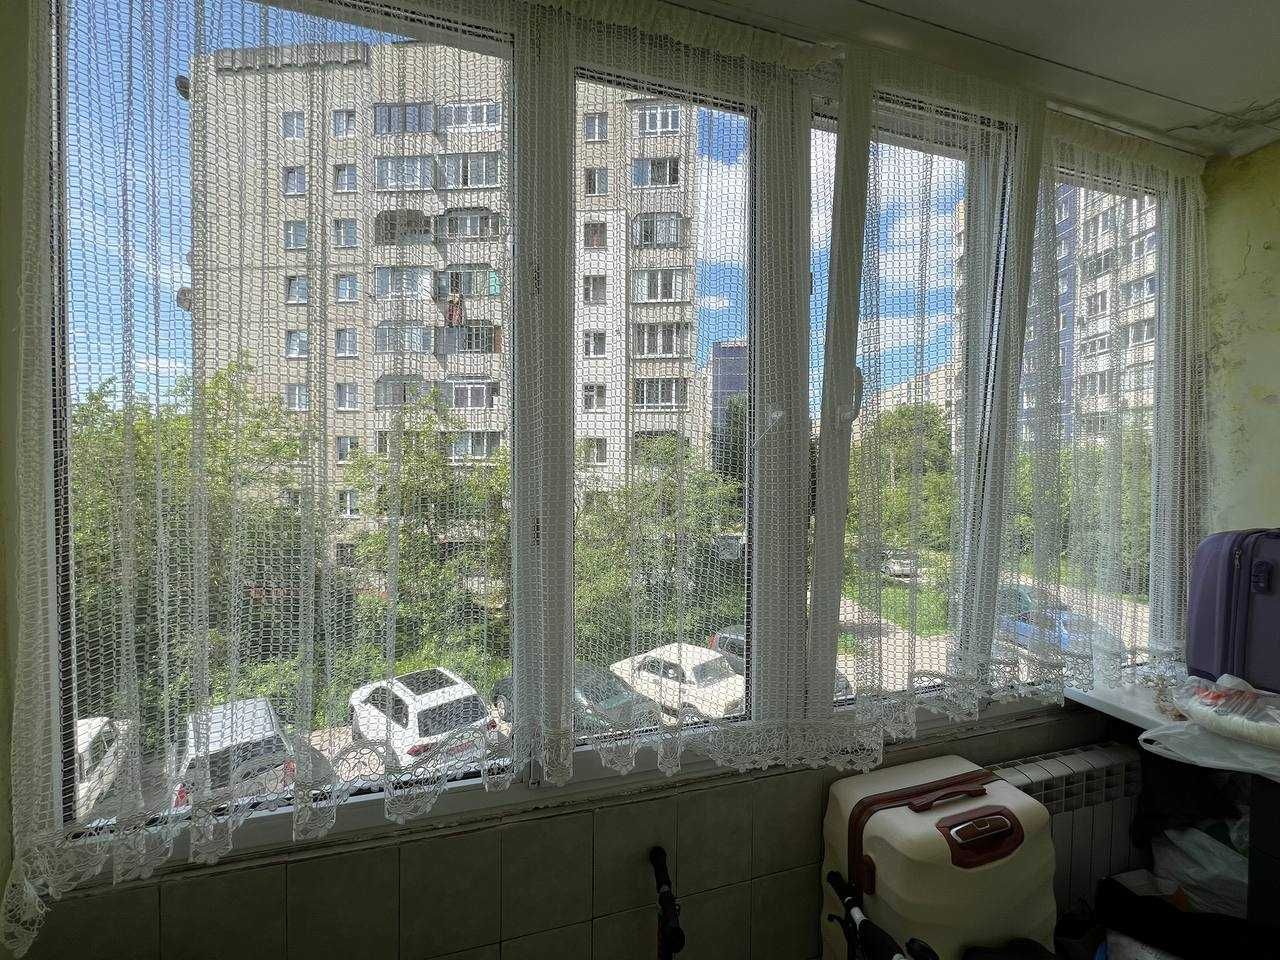 3-кімнатна квартира з ремонтом на вул. Вернадського. БЕЗ КОМІСІЇ!